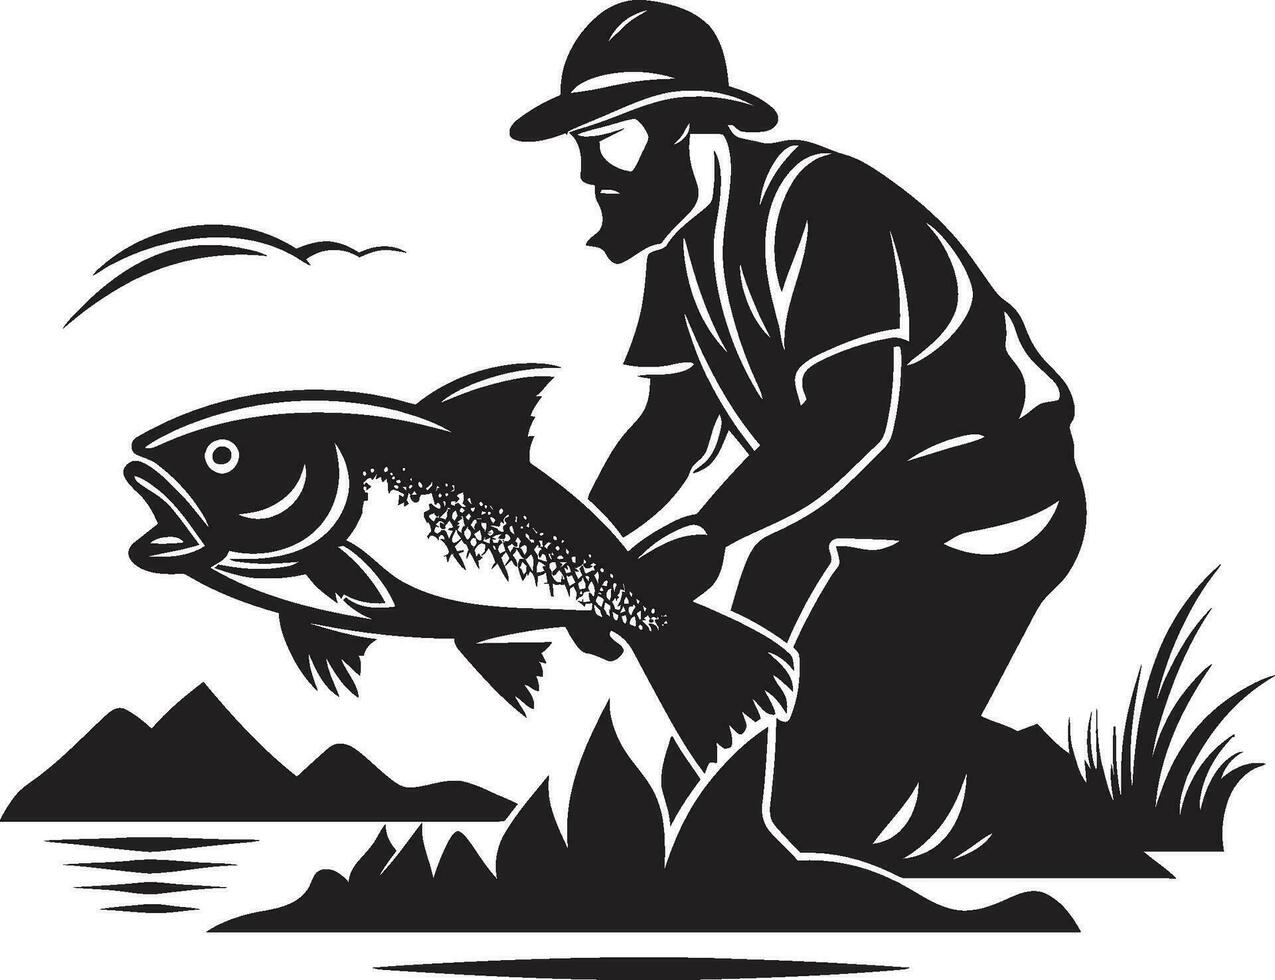 pescatore logo con pesce successo e abbondanza pescatore logo con netto lavoro di squadra e cameratismo vettore